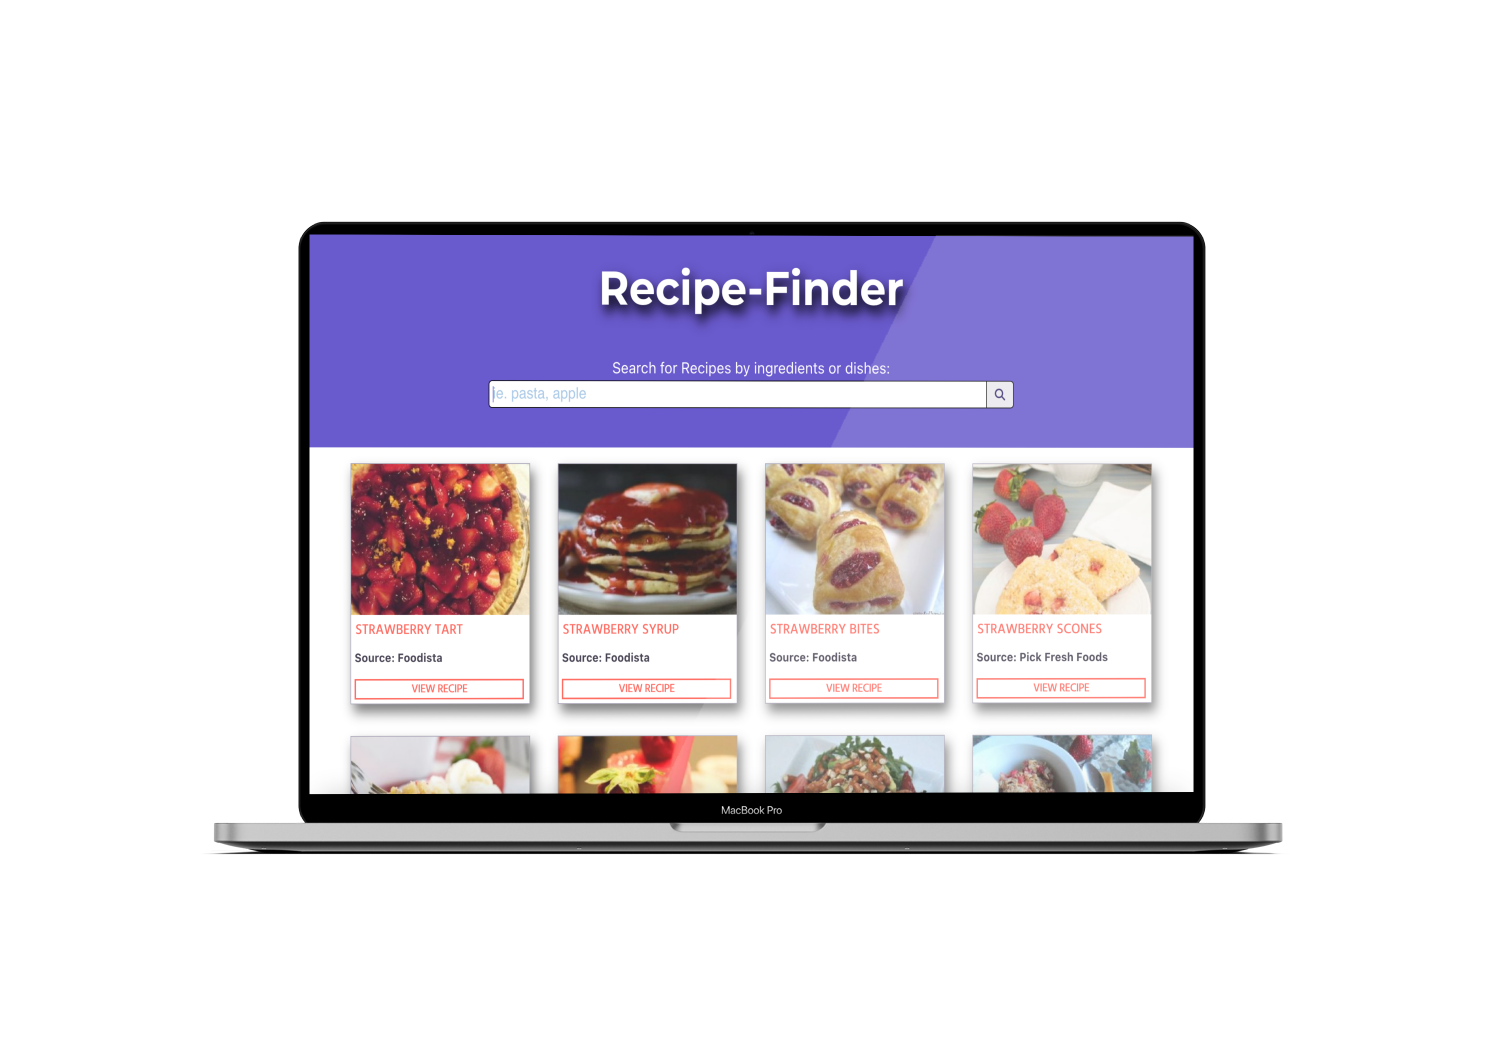 macbook open showing recipe-finder app